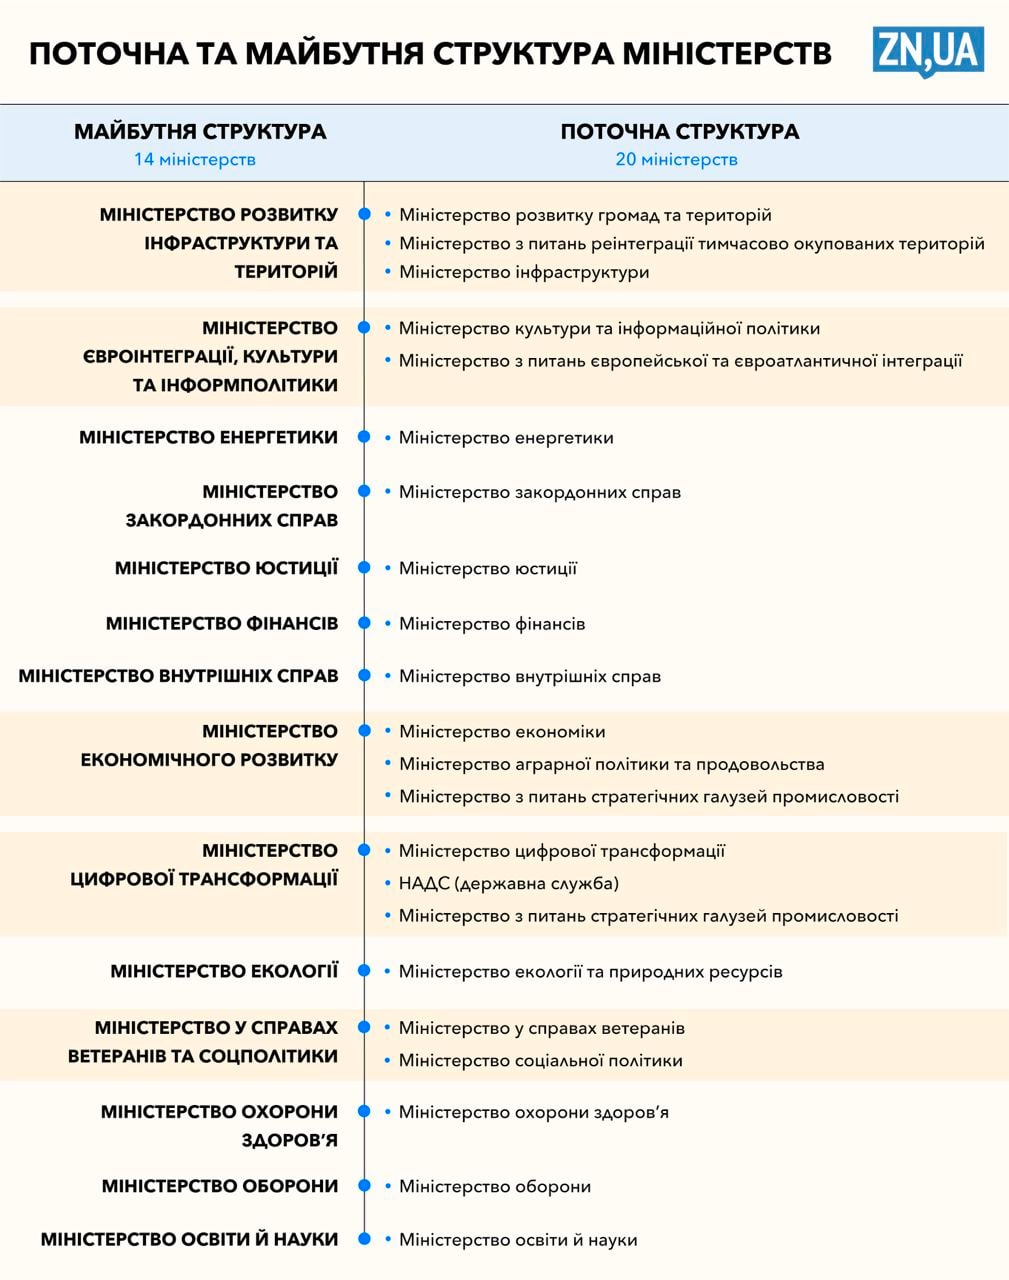 В Украине планируется масштабное сокращение Кабмина: вместо 20 Министерств станет 14